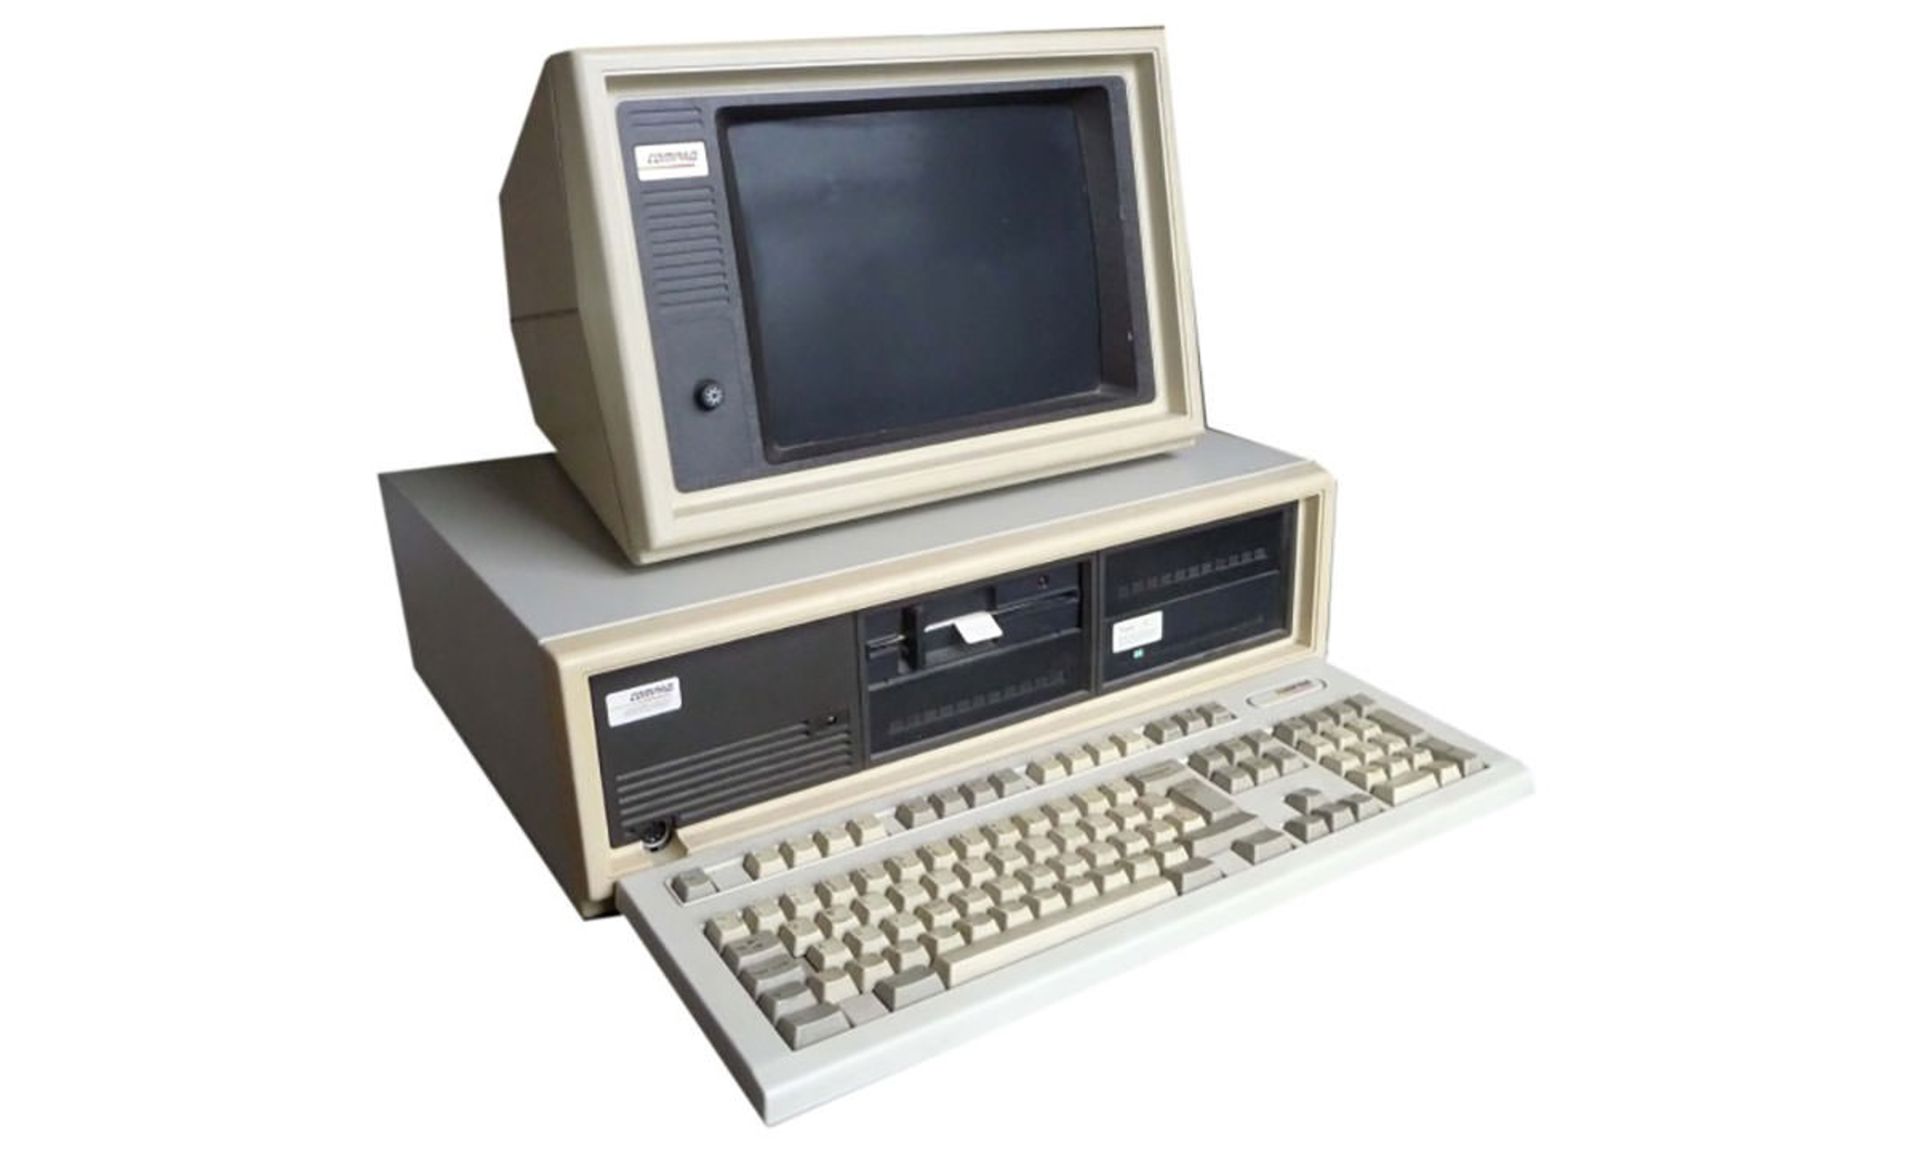 کامپیوتر کامپک Deskpro Model 1